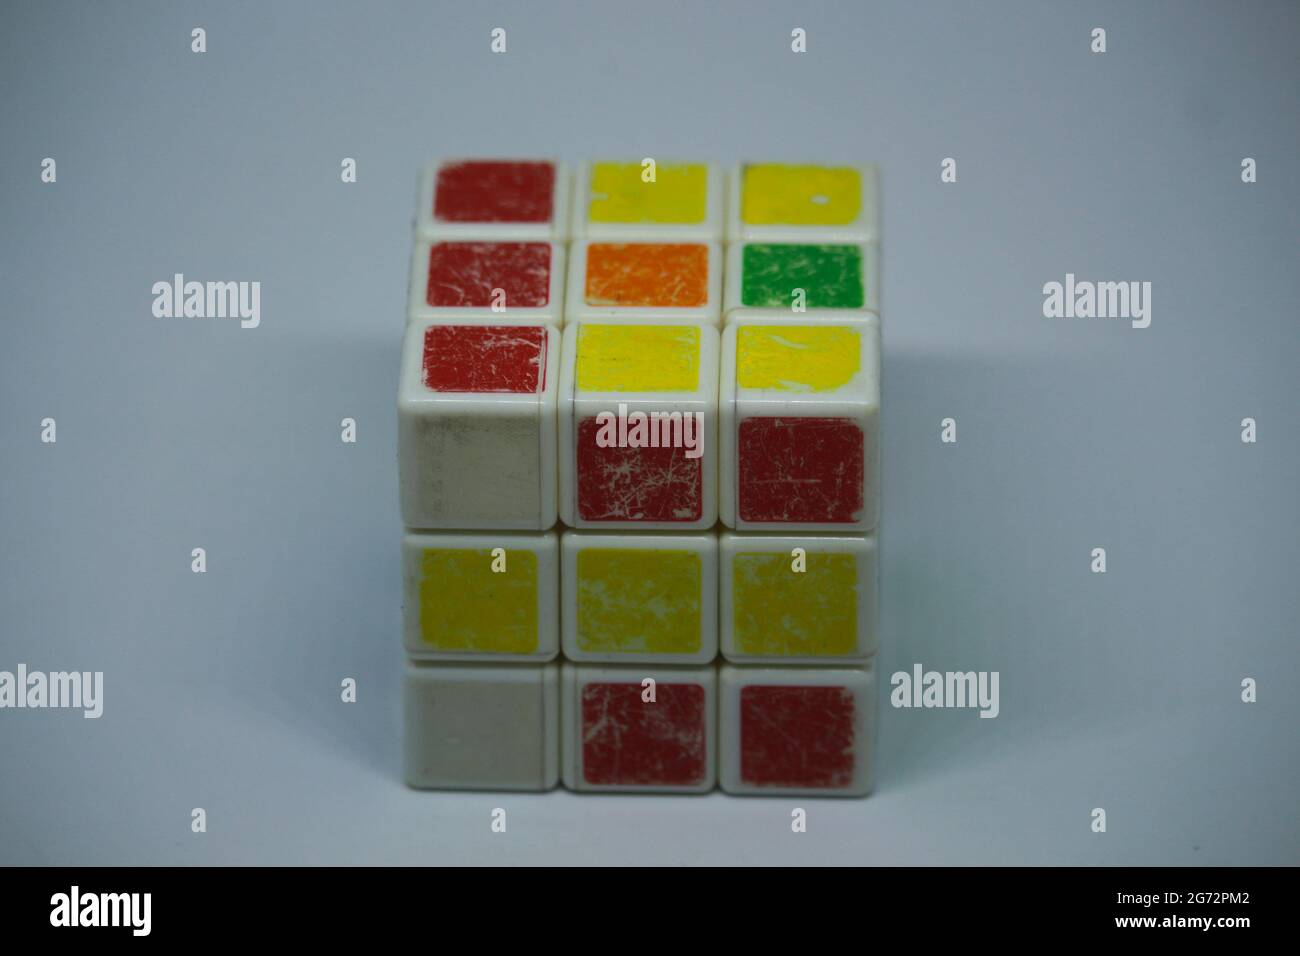 Un ancien Rubik's Cube aléatoire avec fond blanc Banque D'Images